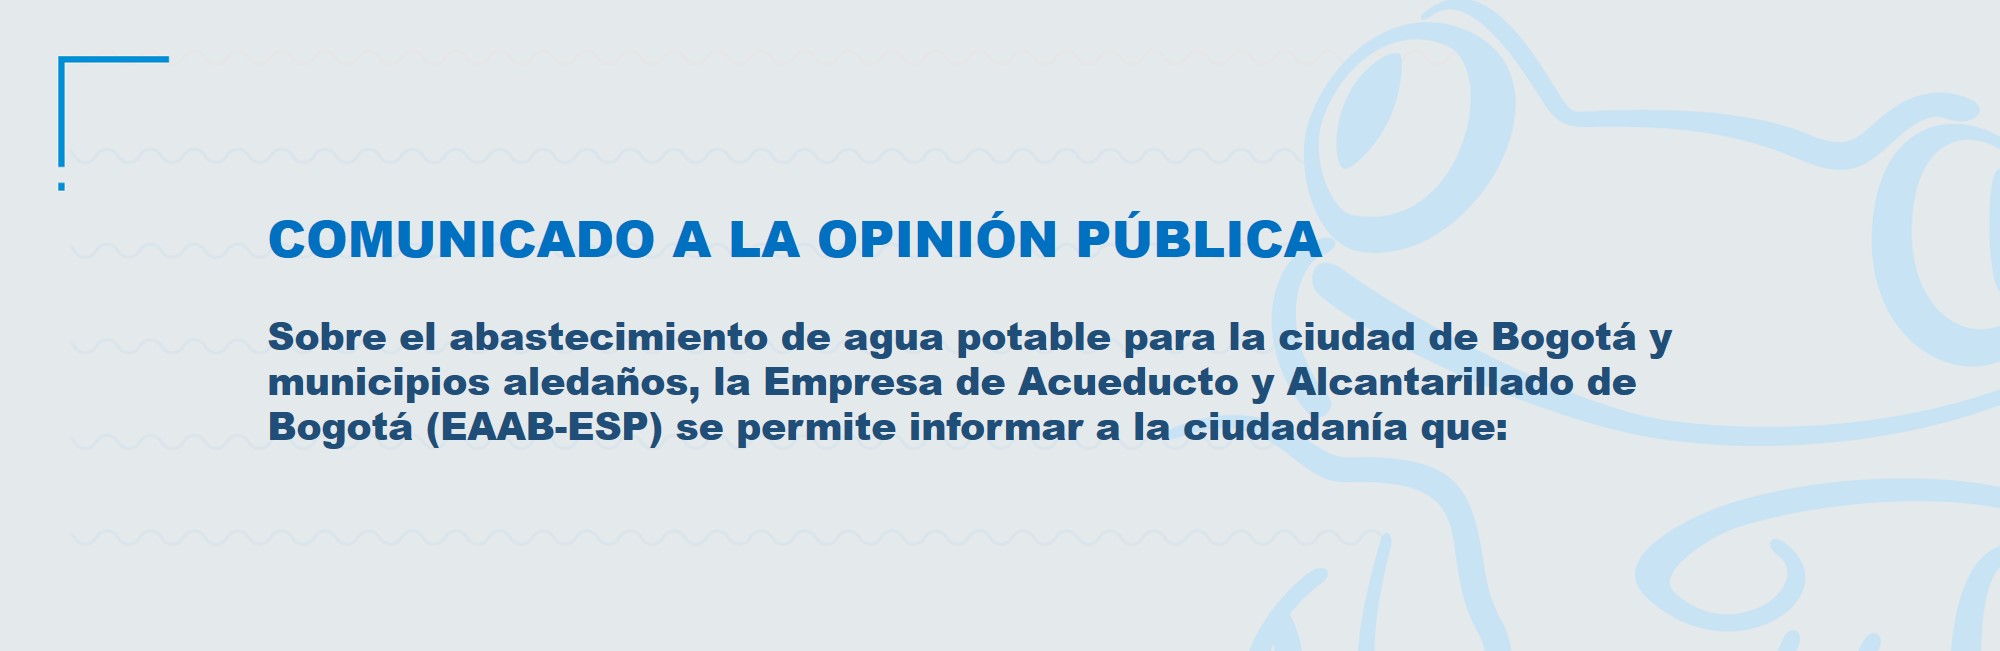 Sobre el abastecimiento de agua potable para la ciudad de Bogotá y municipios aledaños, la Empresa de Acueducto y Alcantarillado de Bogotá (EAAB-ESP), se permite informar a la ciudadanía que: